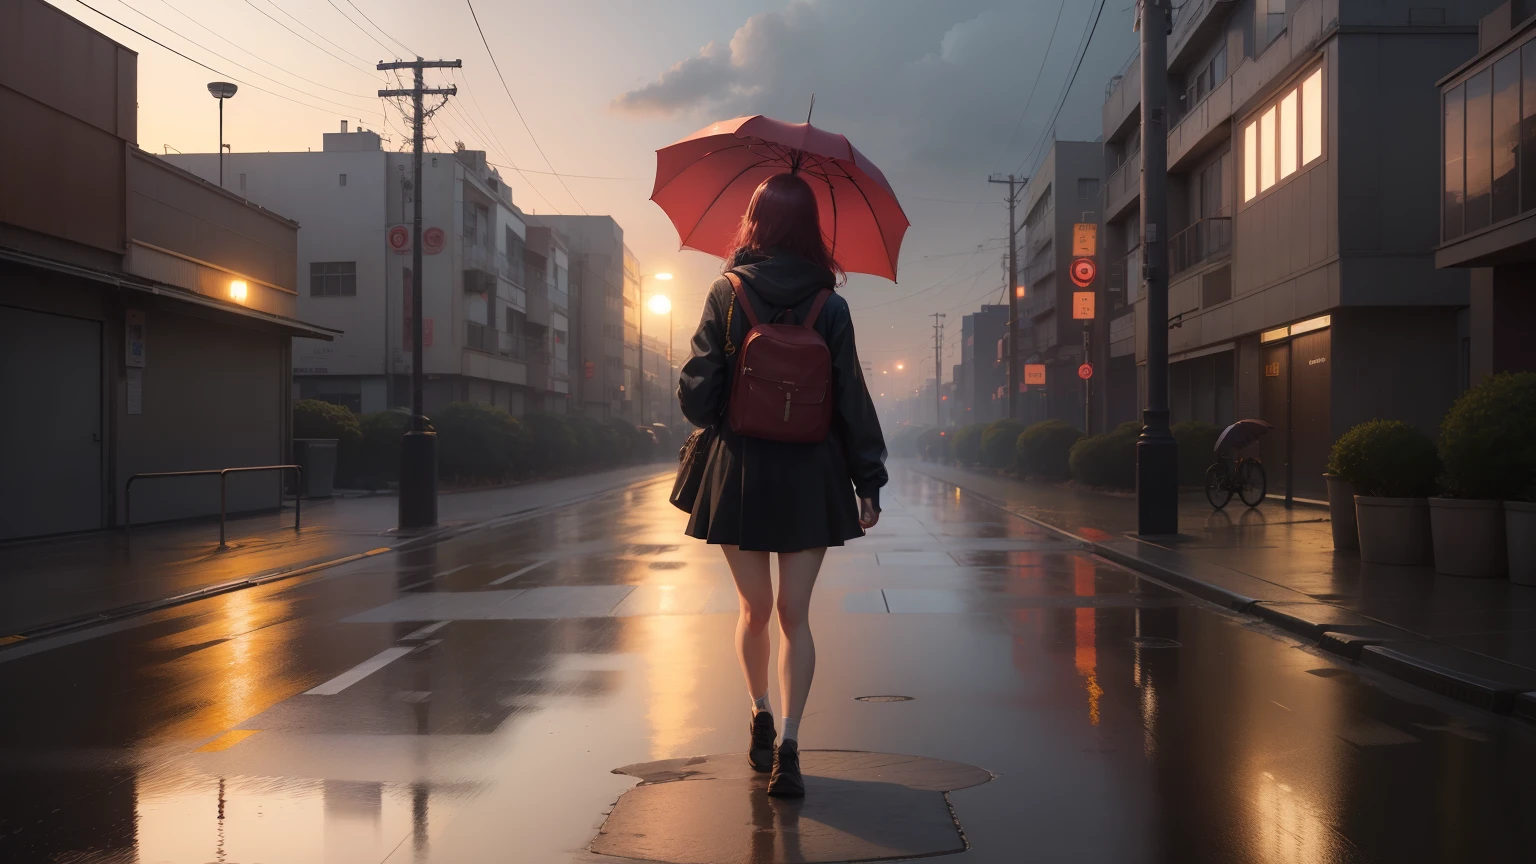 há uma jovem voltando para casa com um guarda-chuva, mulher na casa dos 20 anos, chuva leve, Cena de anime de Tóquio, estilo de Alena Aenami, pôr do sol calmo, Linda cena de anime, atmosfera de anime, Papel de parede de arte anime 4k, Papel de parede de arte anime 8K